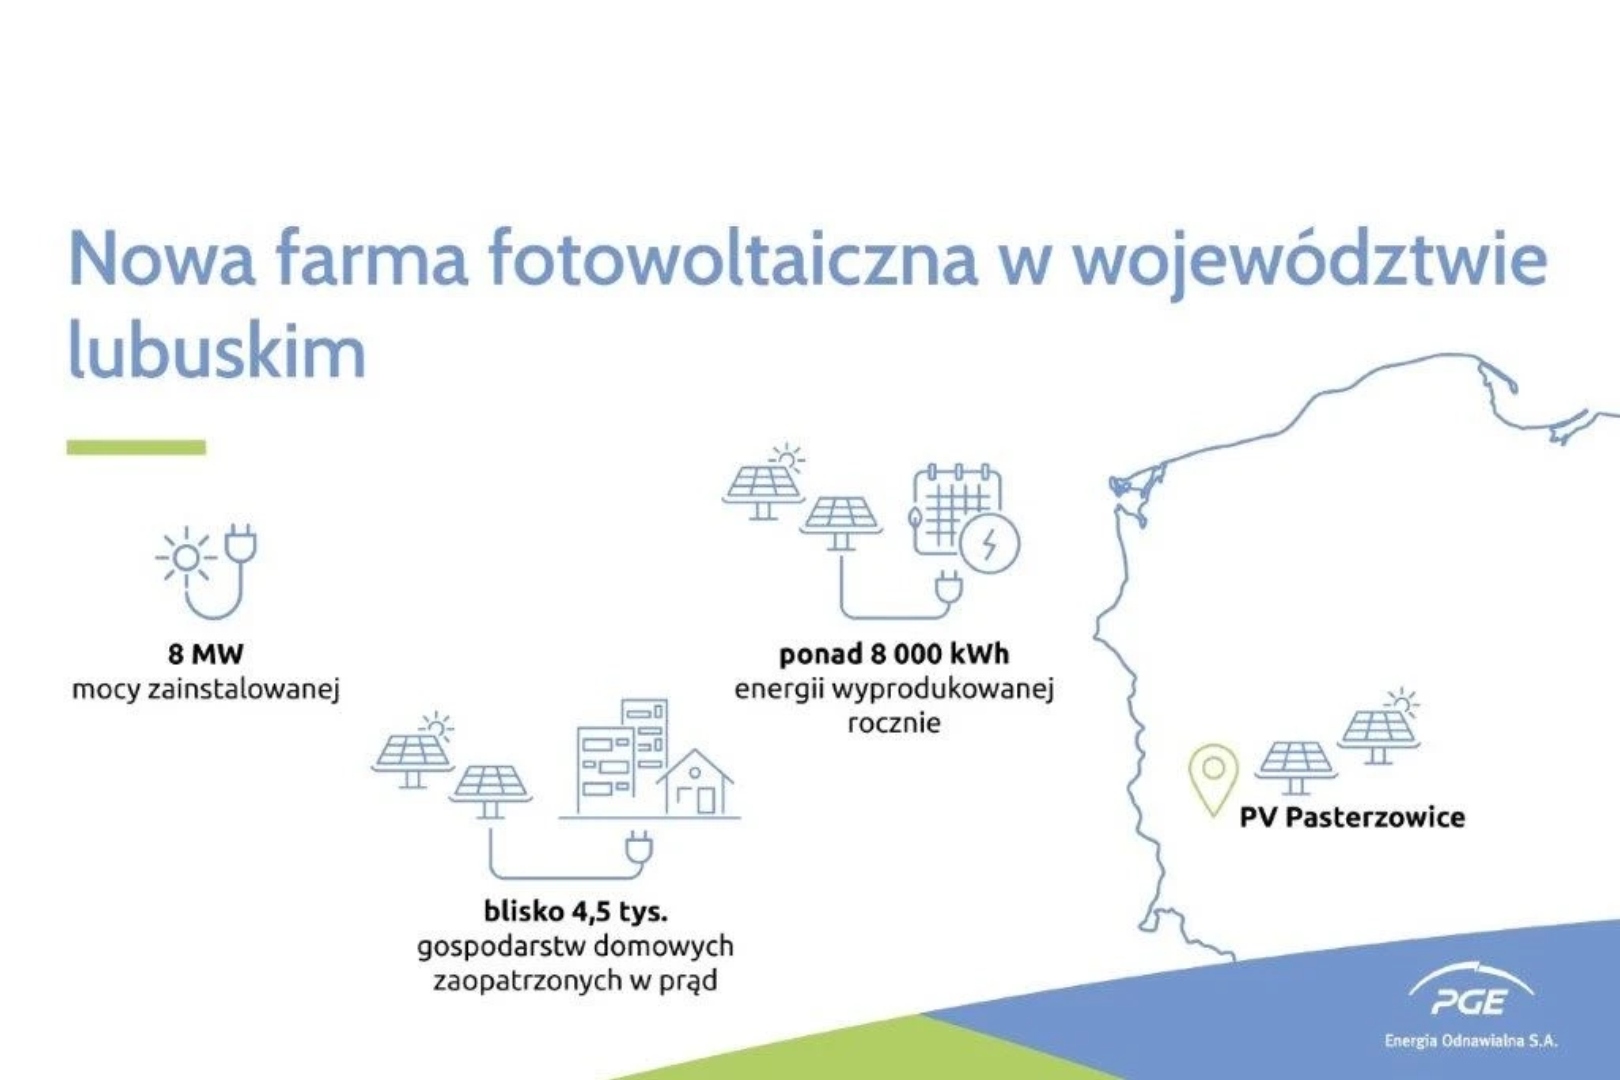 16 ha farma fotowoltaiczna w Pasterzowicach zasili w energię prawie 4.5 tys. gospodarstw domowych Radio Zachód - Lubuskie